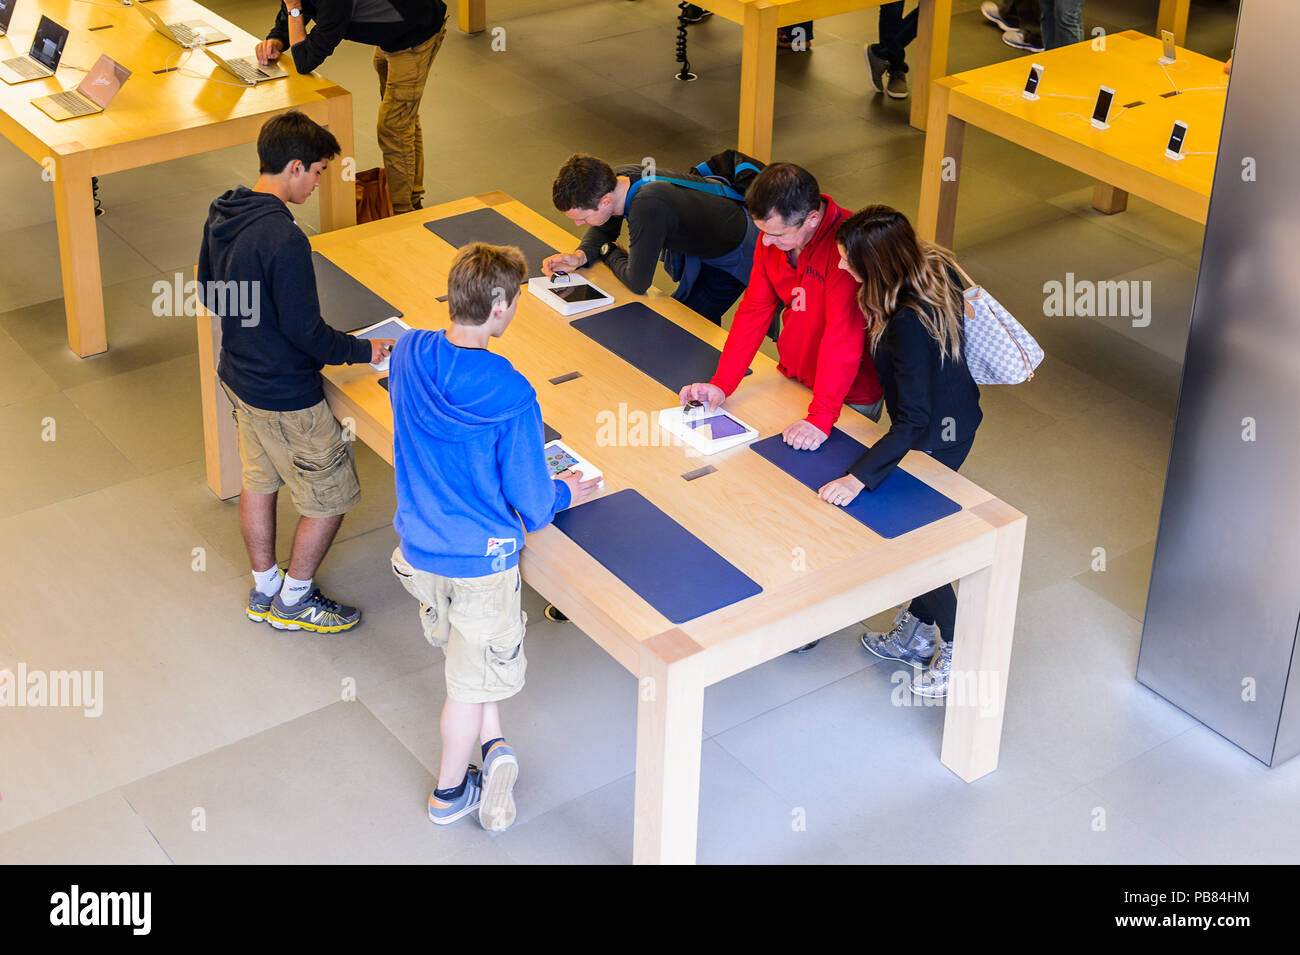 NEW YORK, USA - Sep 22, 2015 : personnes non identifiées dans l'Apple store sur la Cinquième Avenue, New York. Le magasin vend des ordinateurs personnels Macintosh, soft Banque D'Images